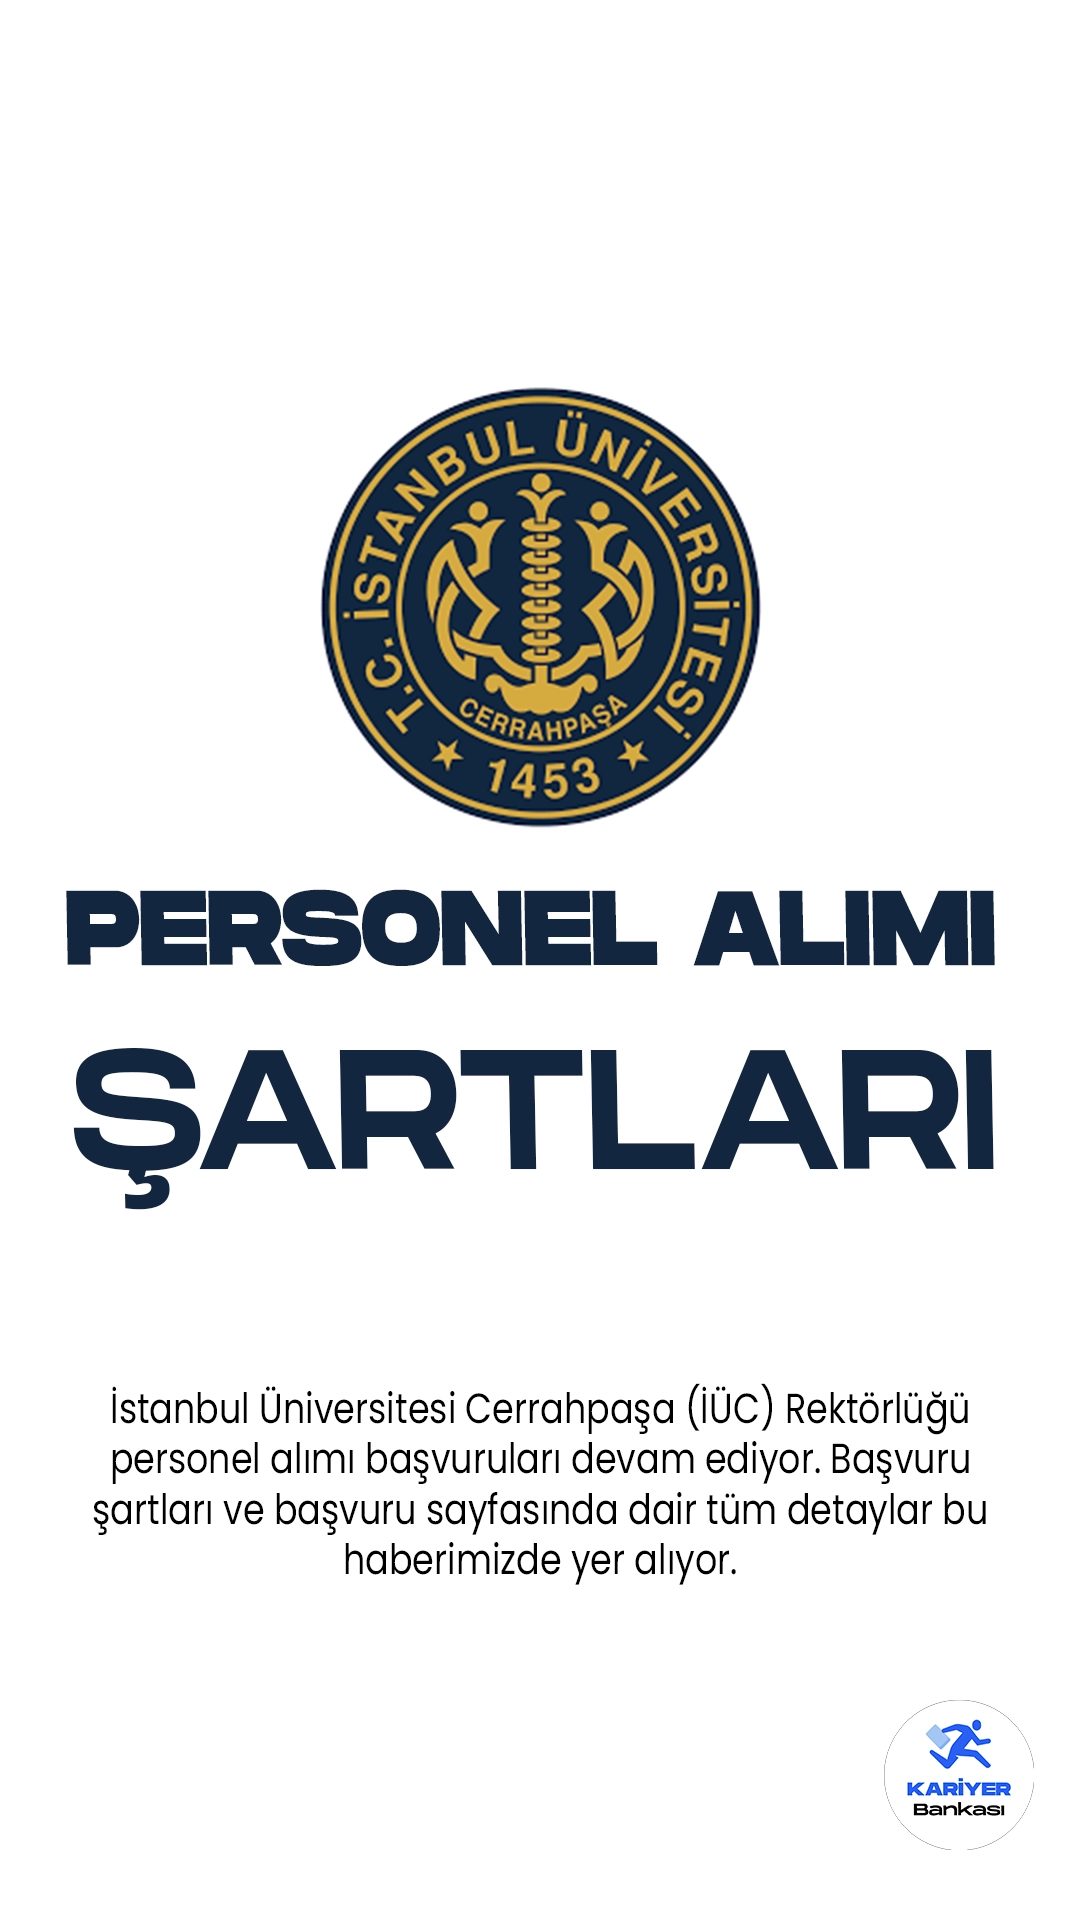 İstanbul Üniversitesi Cerrahpaşa (İÜC) Rektörlüğü personel alımı başvuruları devam ediyor. Başvuru şartları ve başvuru sayfasında dair tüm detaylar bu haberimizde yer alıyor.